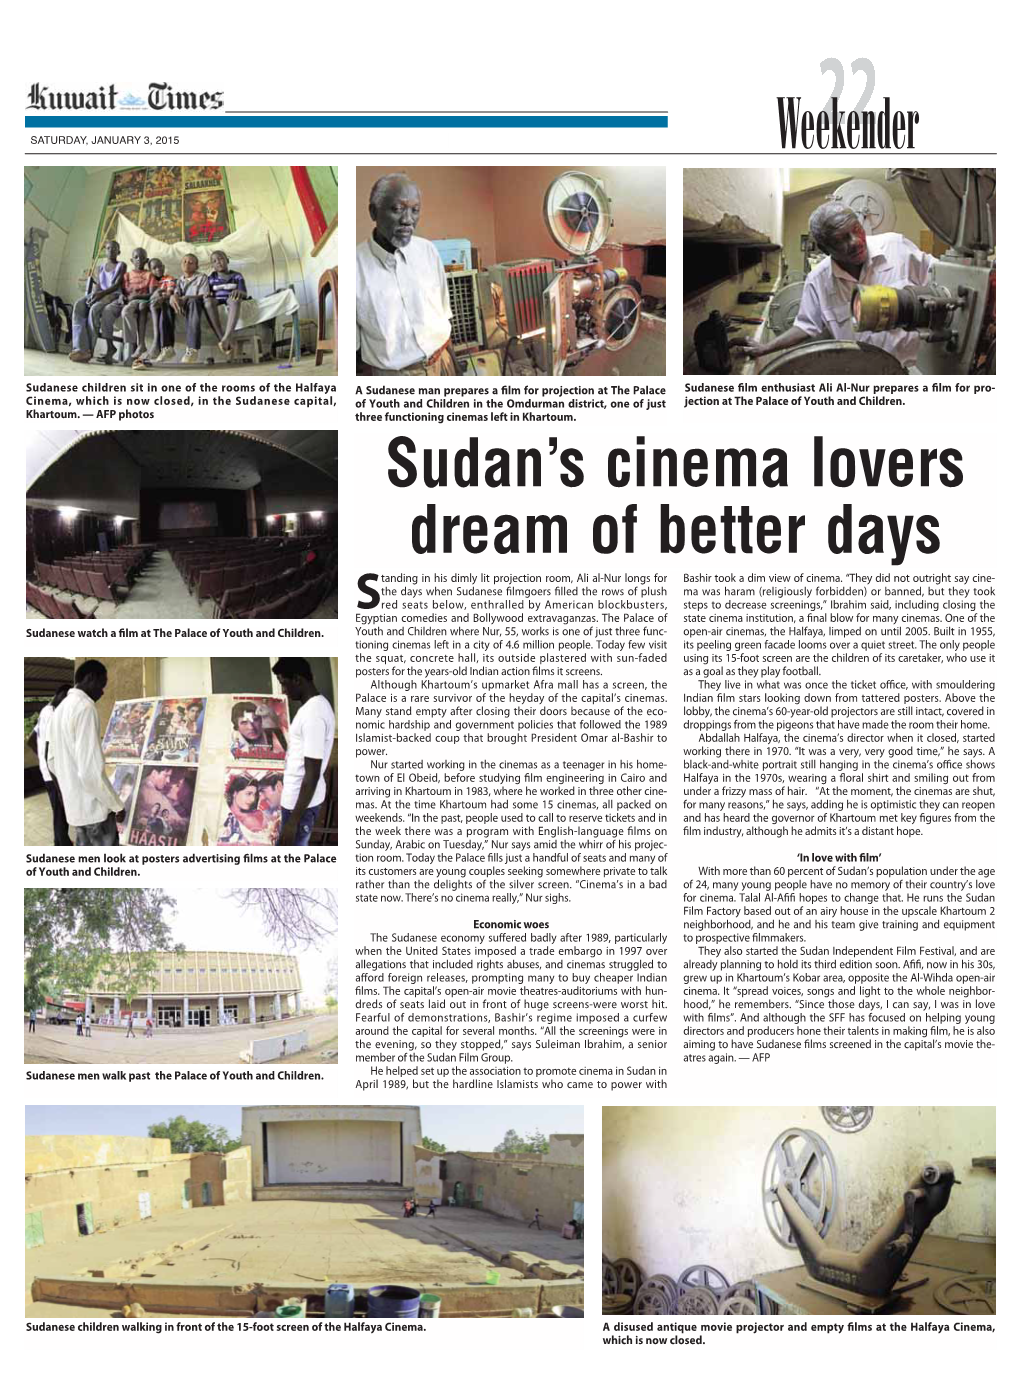 Sudan's Cinema Lovers Dream of Better Days